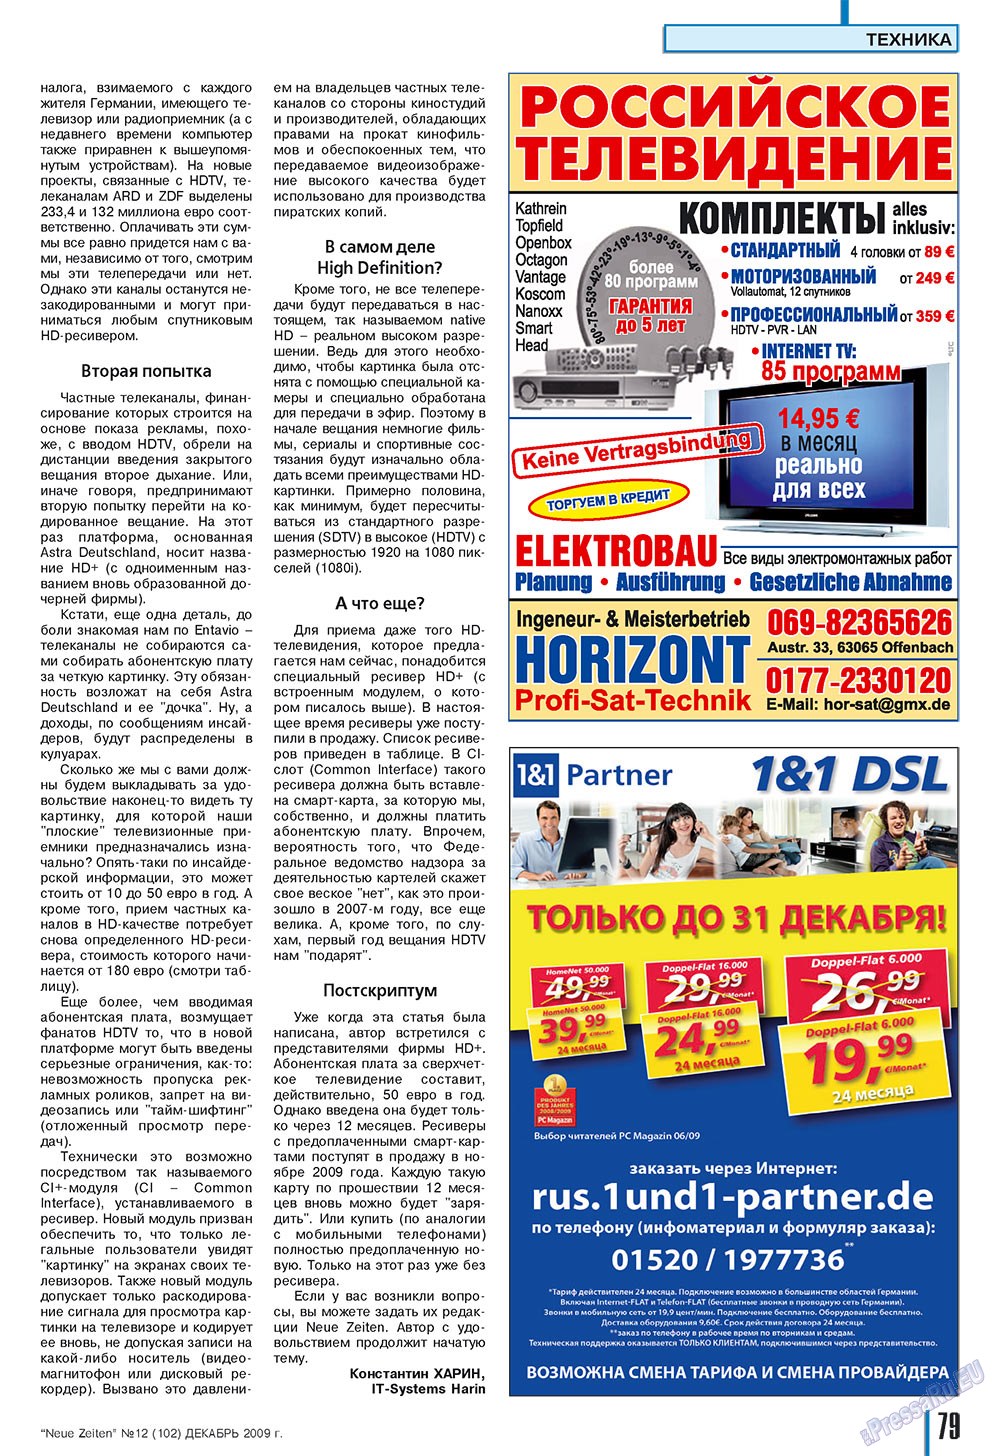 Neue Zeiten, журнал. 2009 №12 стр.79